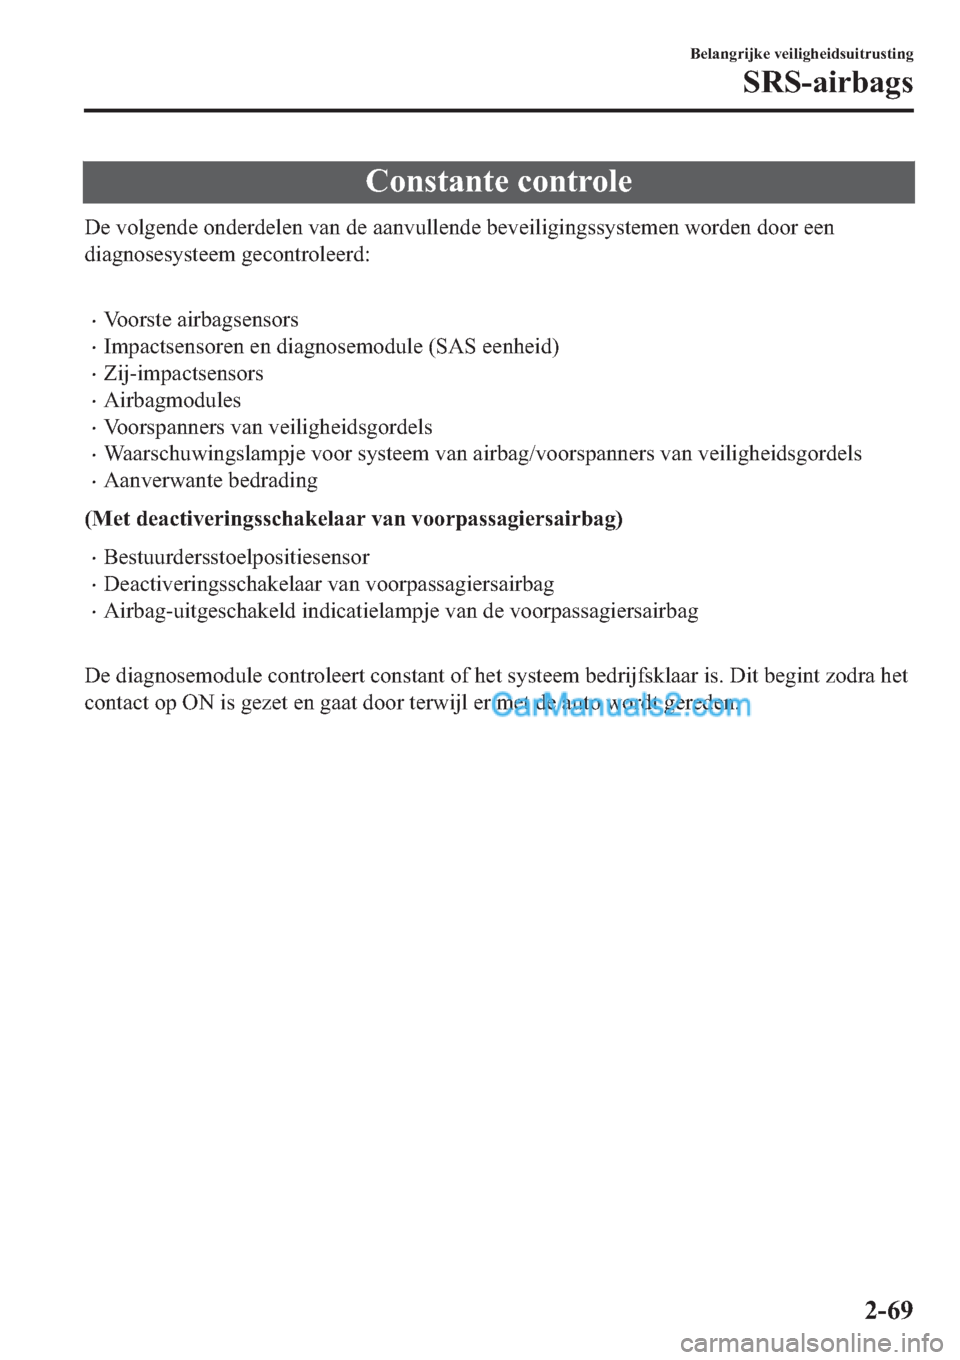 MAZDA MODEL 2 2019  Handleiding (in Dutch) �&�R�Q�V�W�D�Q�W�H��F�R�Q�W�U�R�O�H
��H��Y�R�O�J�H�Q�G�H��R�Q�G�H�U�G�H�O�H�Q��Y�D�Q��G�H��D�D�Q�Y�X�O�O�H�Q�G�H��E�H�Y�H�L�O�L�J�L�Q�J�V�V�\�V�W�H�P�H�Q��Z�R�U�G�H�Q��G�R�R�U��H�H�Q
�G�L�D